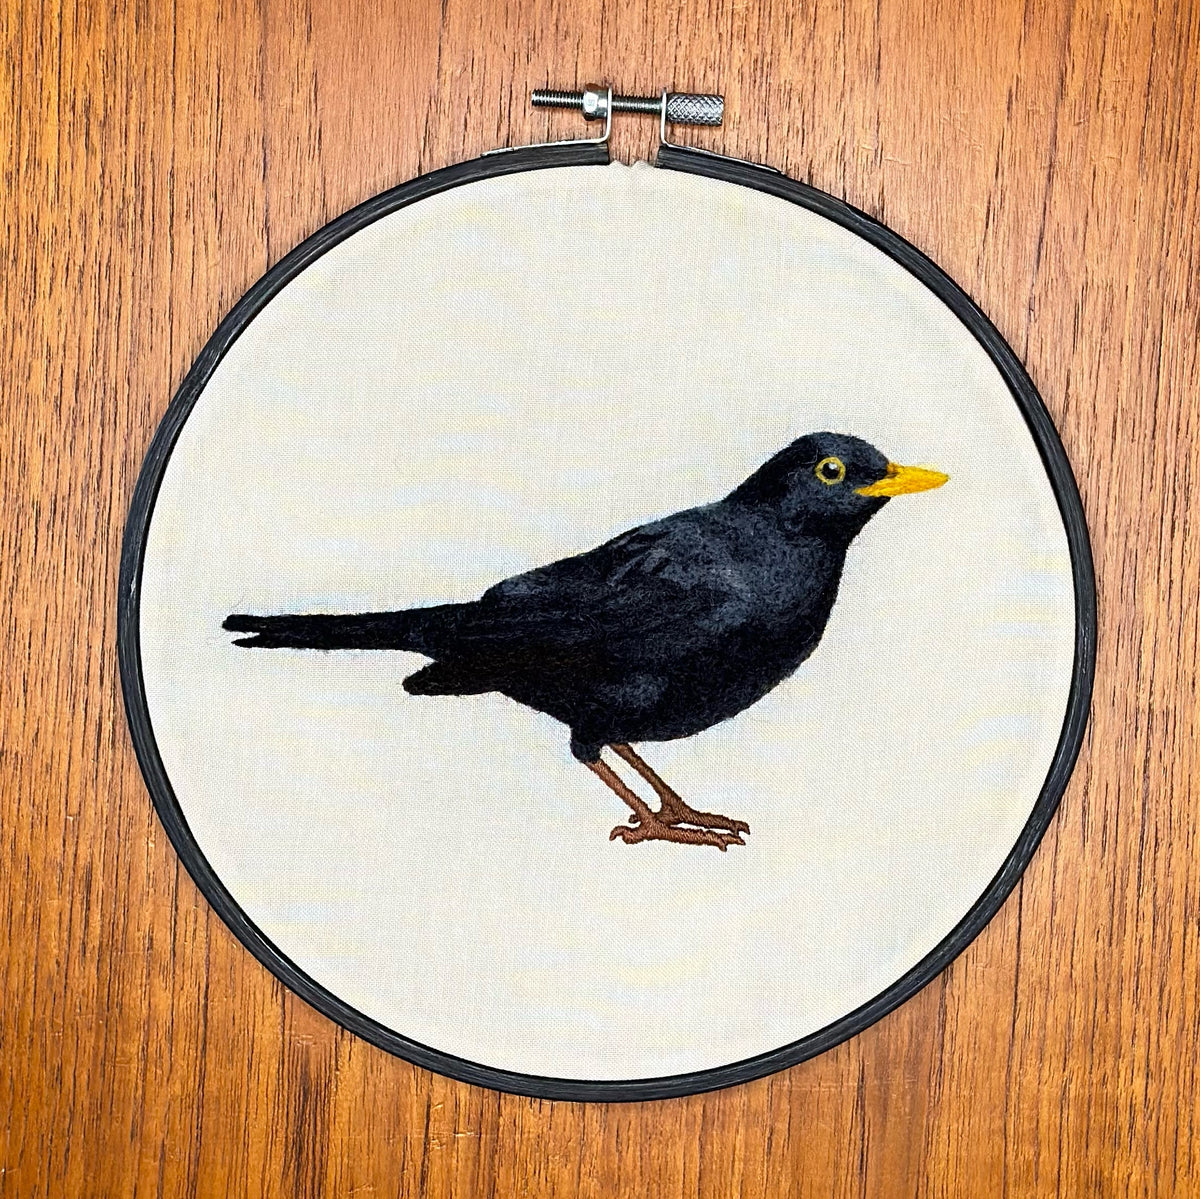 'Blackbird' needlefelted portrait